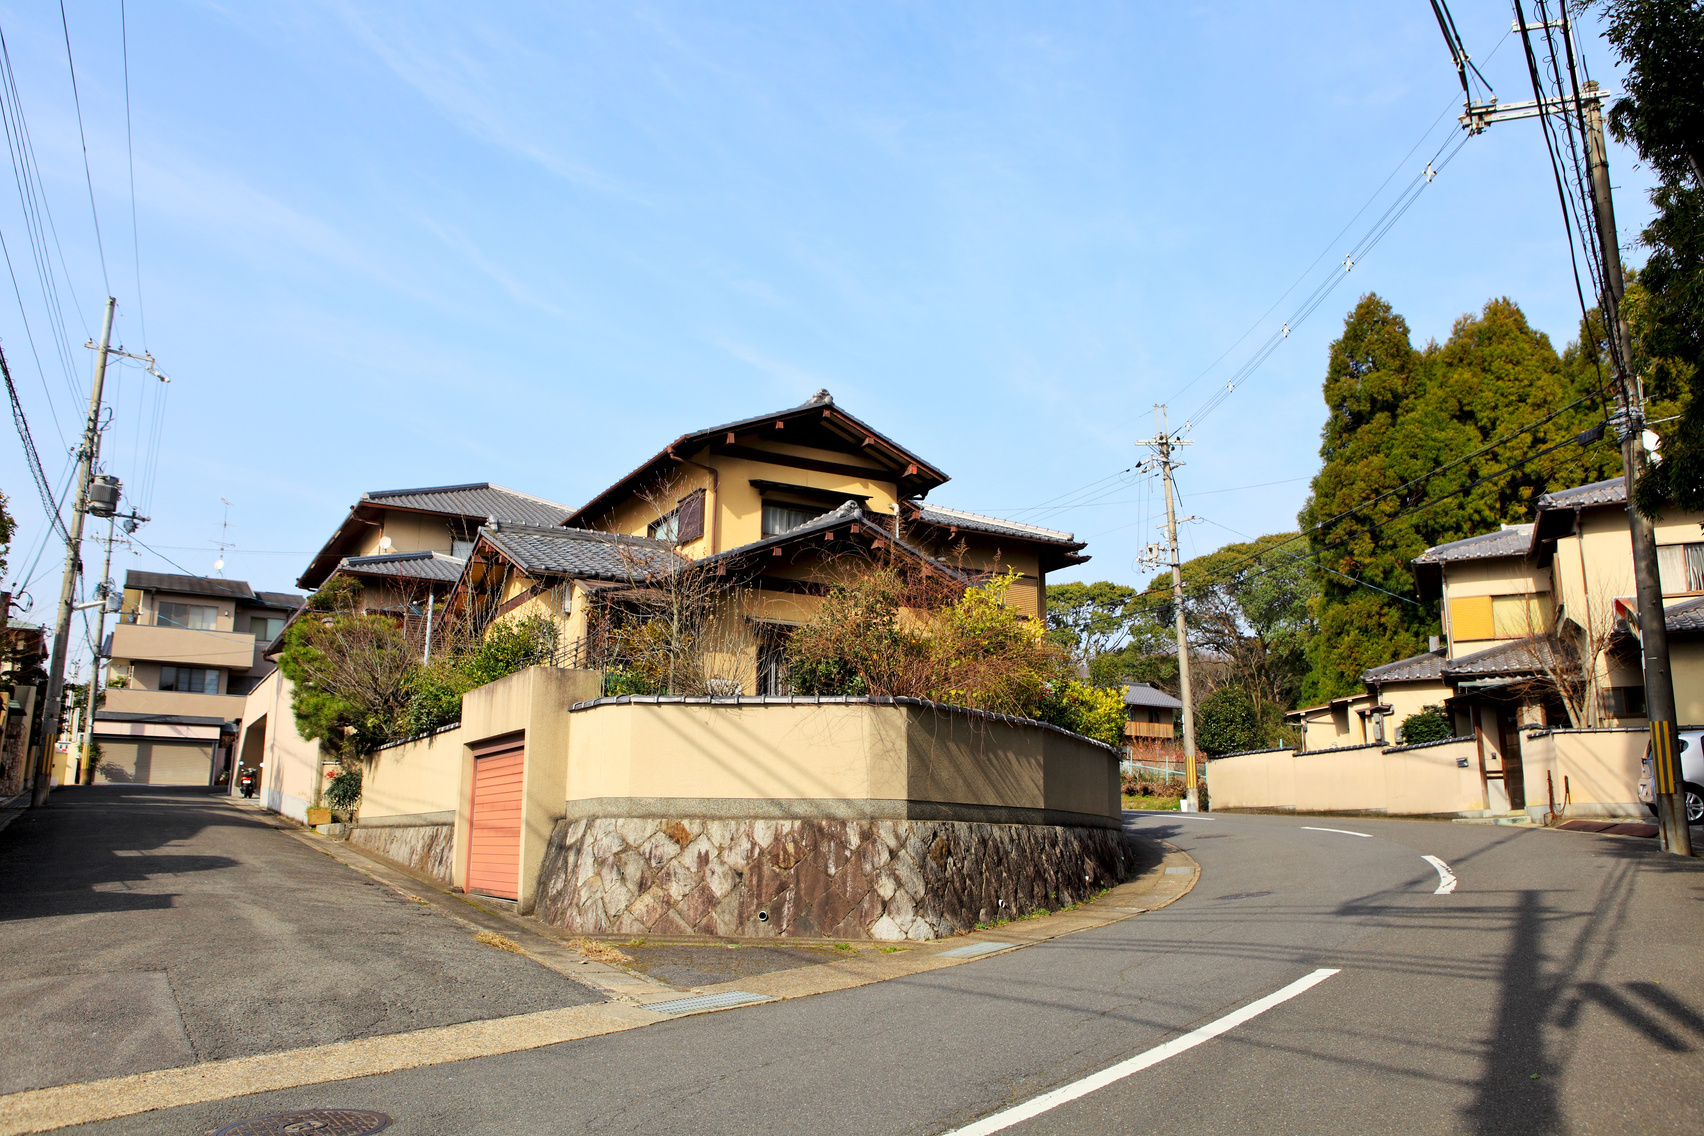 Japanese Residential House